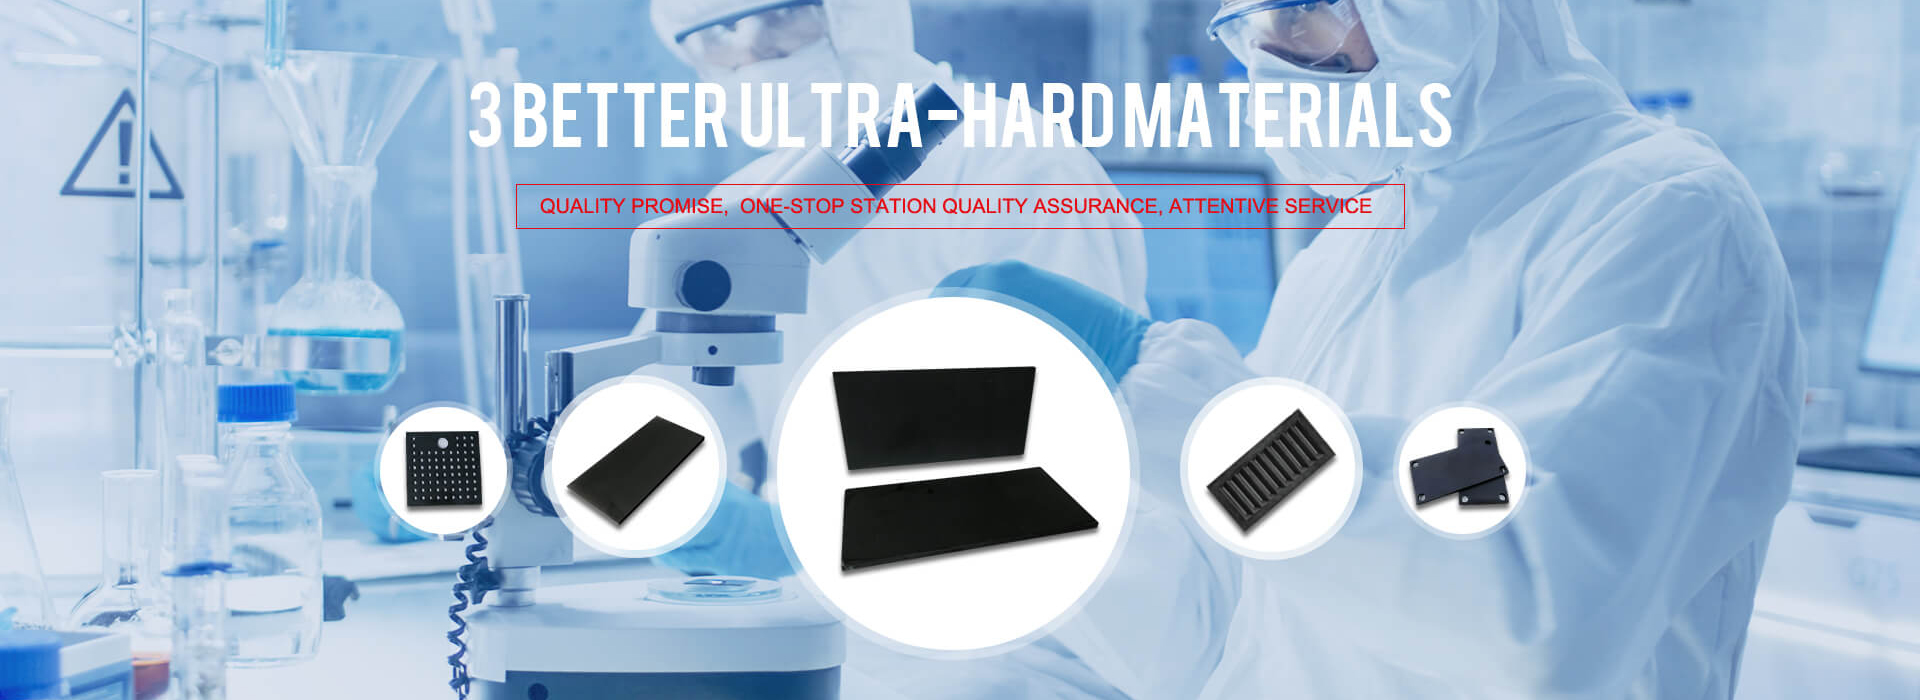 Changsha 3 Better Ultra-Hard Materials